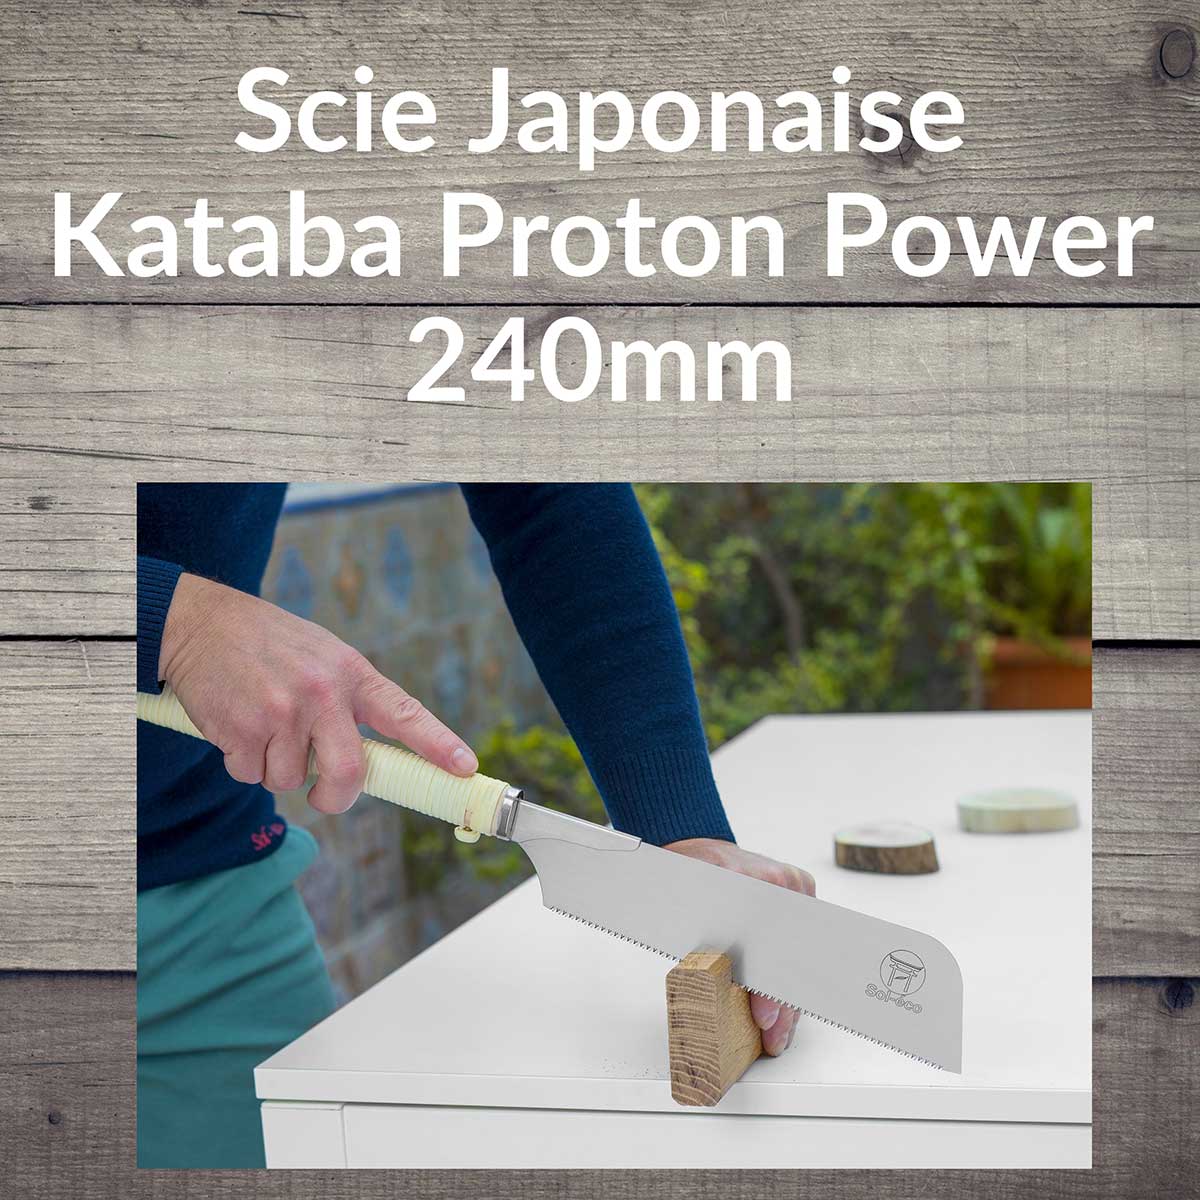 scie japonaise kataba proton power ibarame